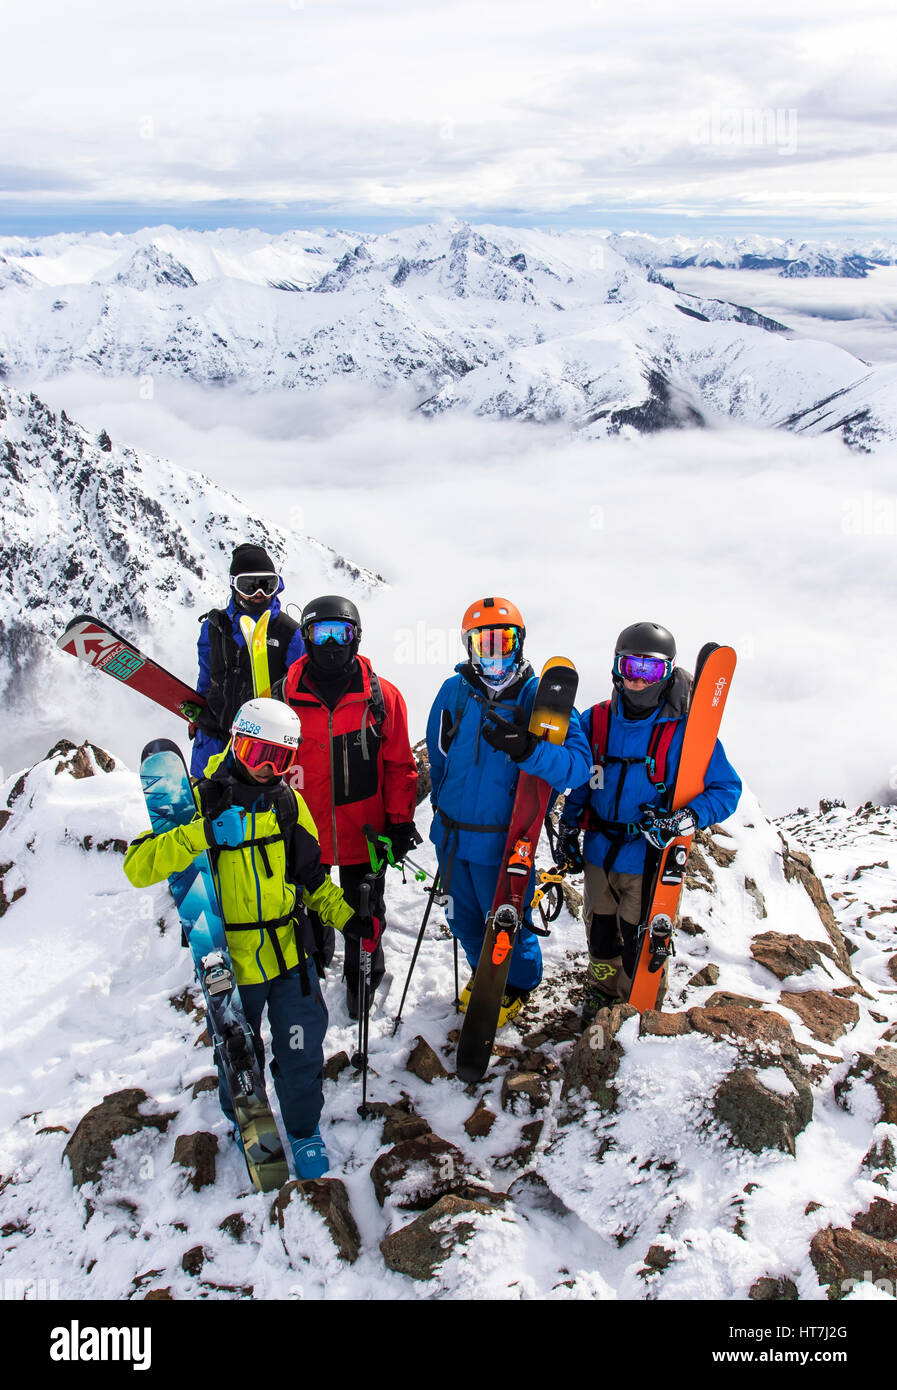 Un grupo de cinco esquiadores de pie en una cresta rocosa delante de la majestuosa cordillera de Los Andes Foto de stock